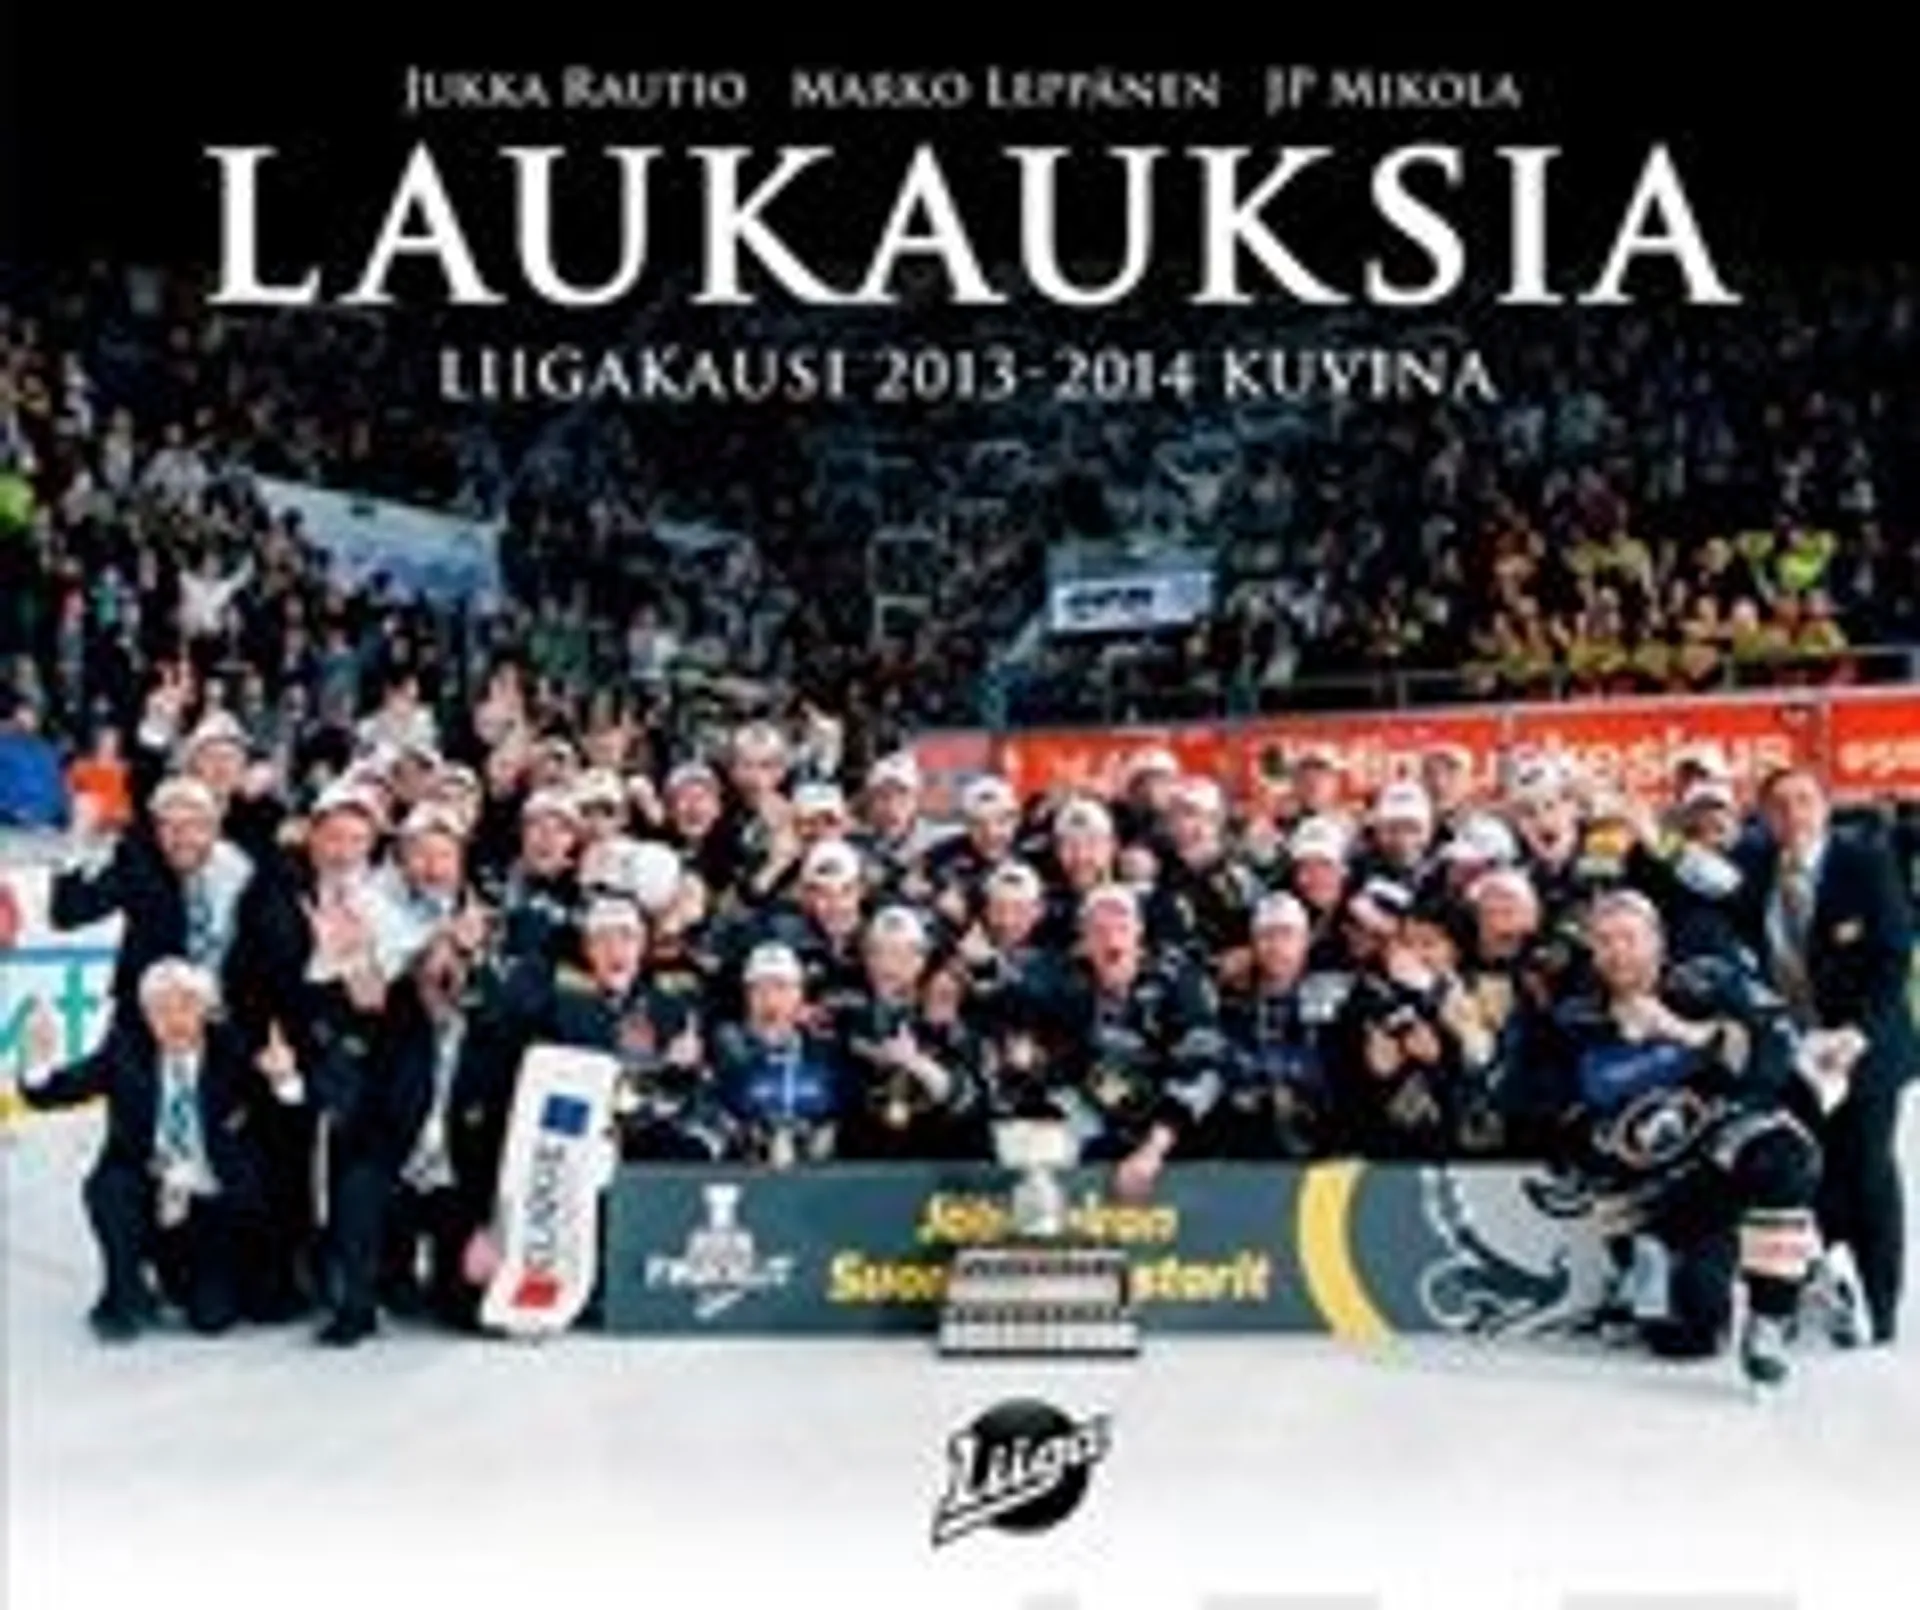 Leppänen, Laukauksia 2013-14